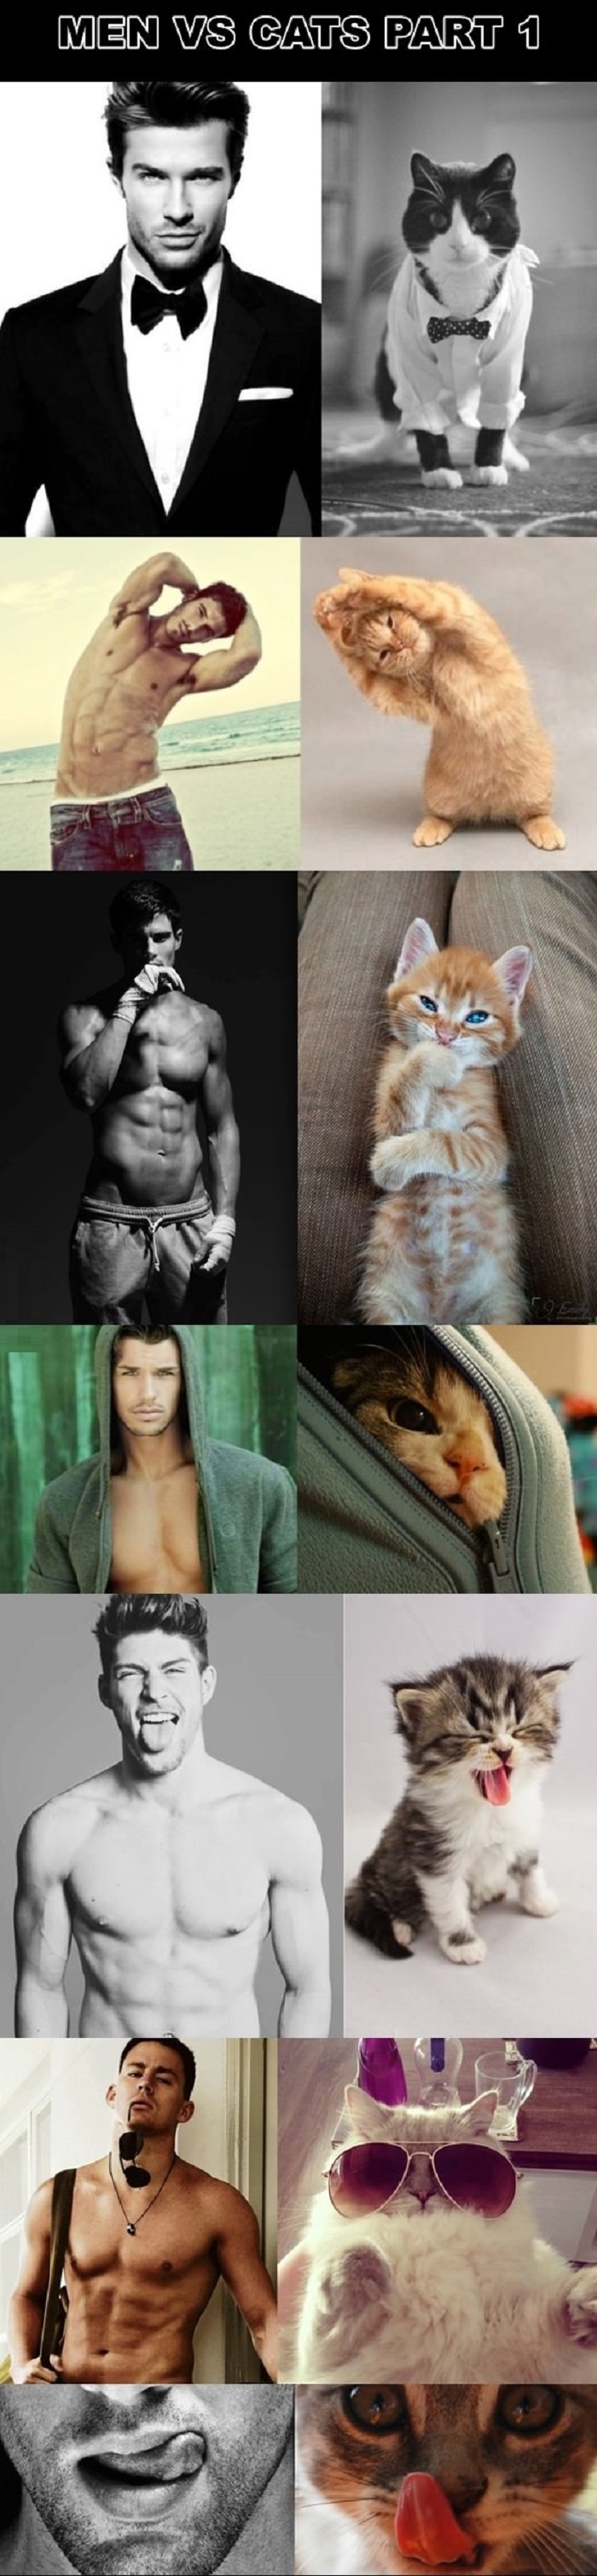 Men vs cats